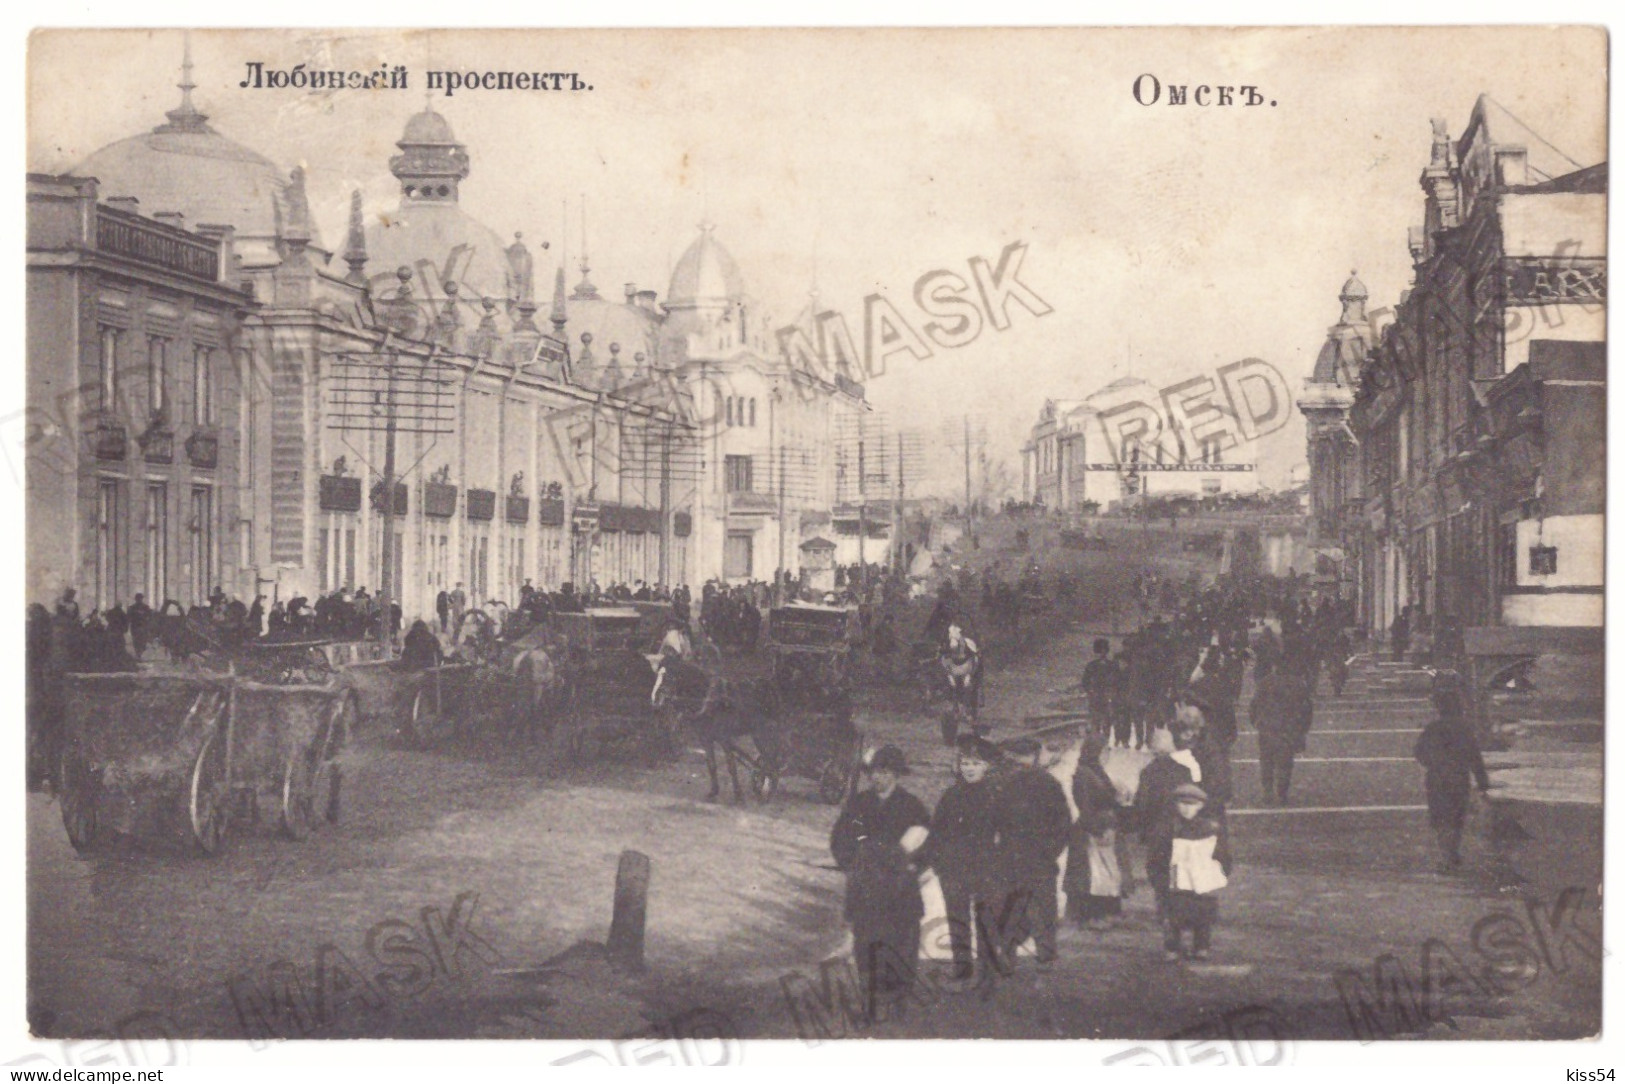 RUS 54 - 22243 OMSK, Market, Russia - Old Postcard - Unused - Rusia